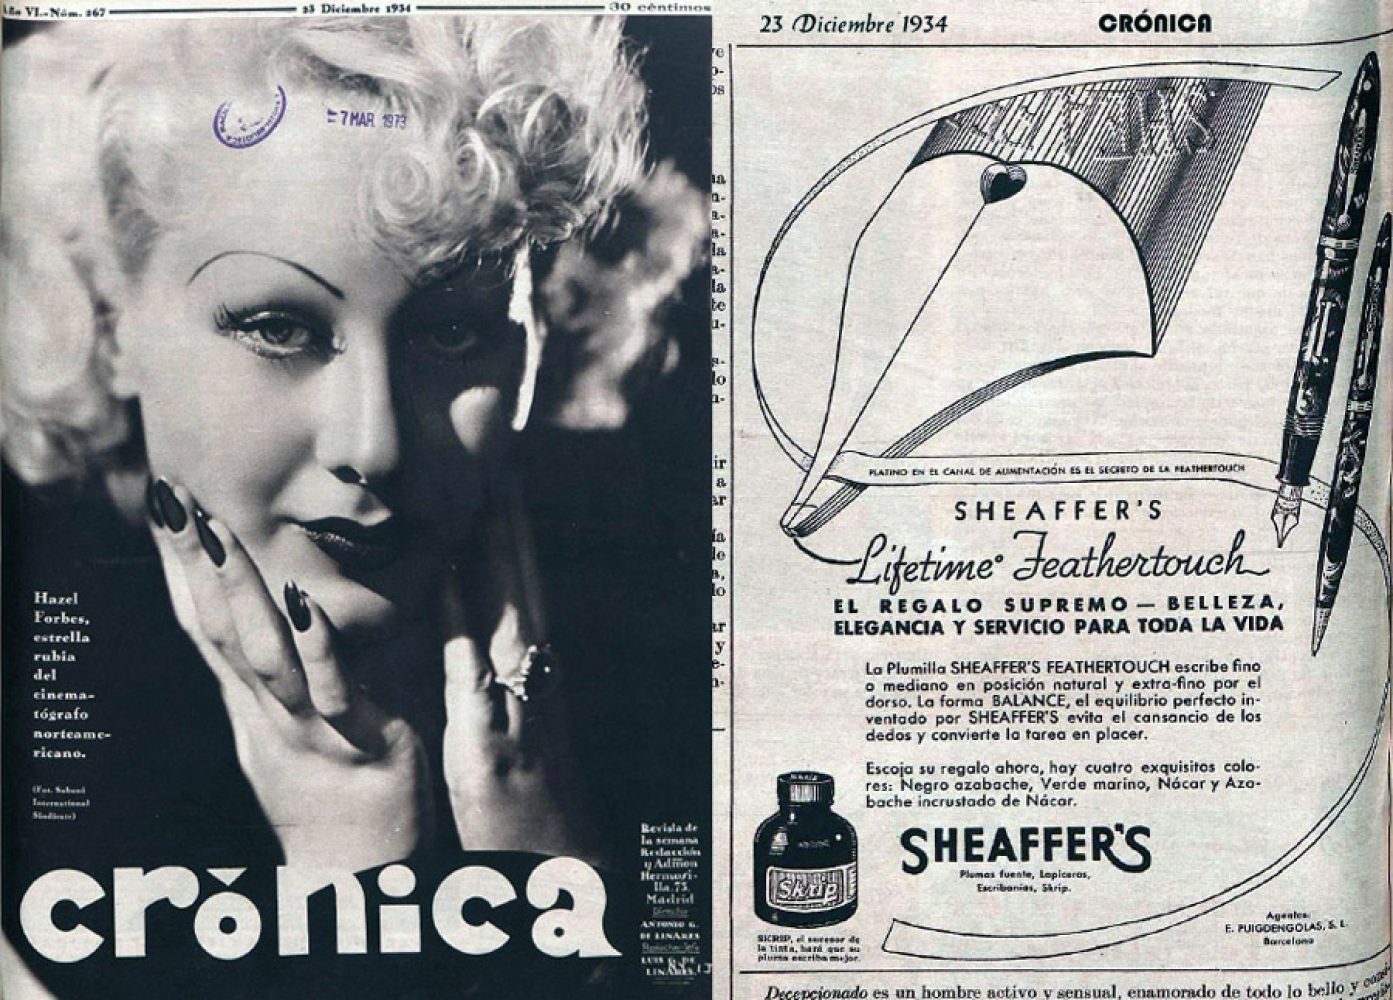 1934 12 23 Spanish ad